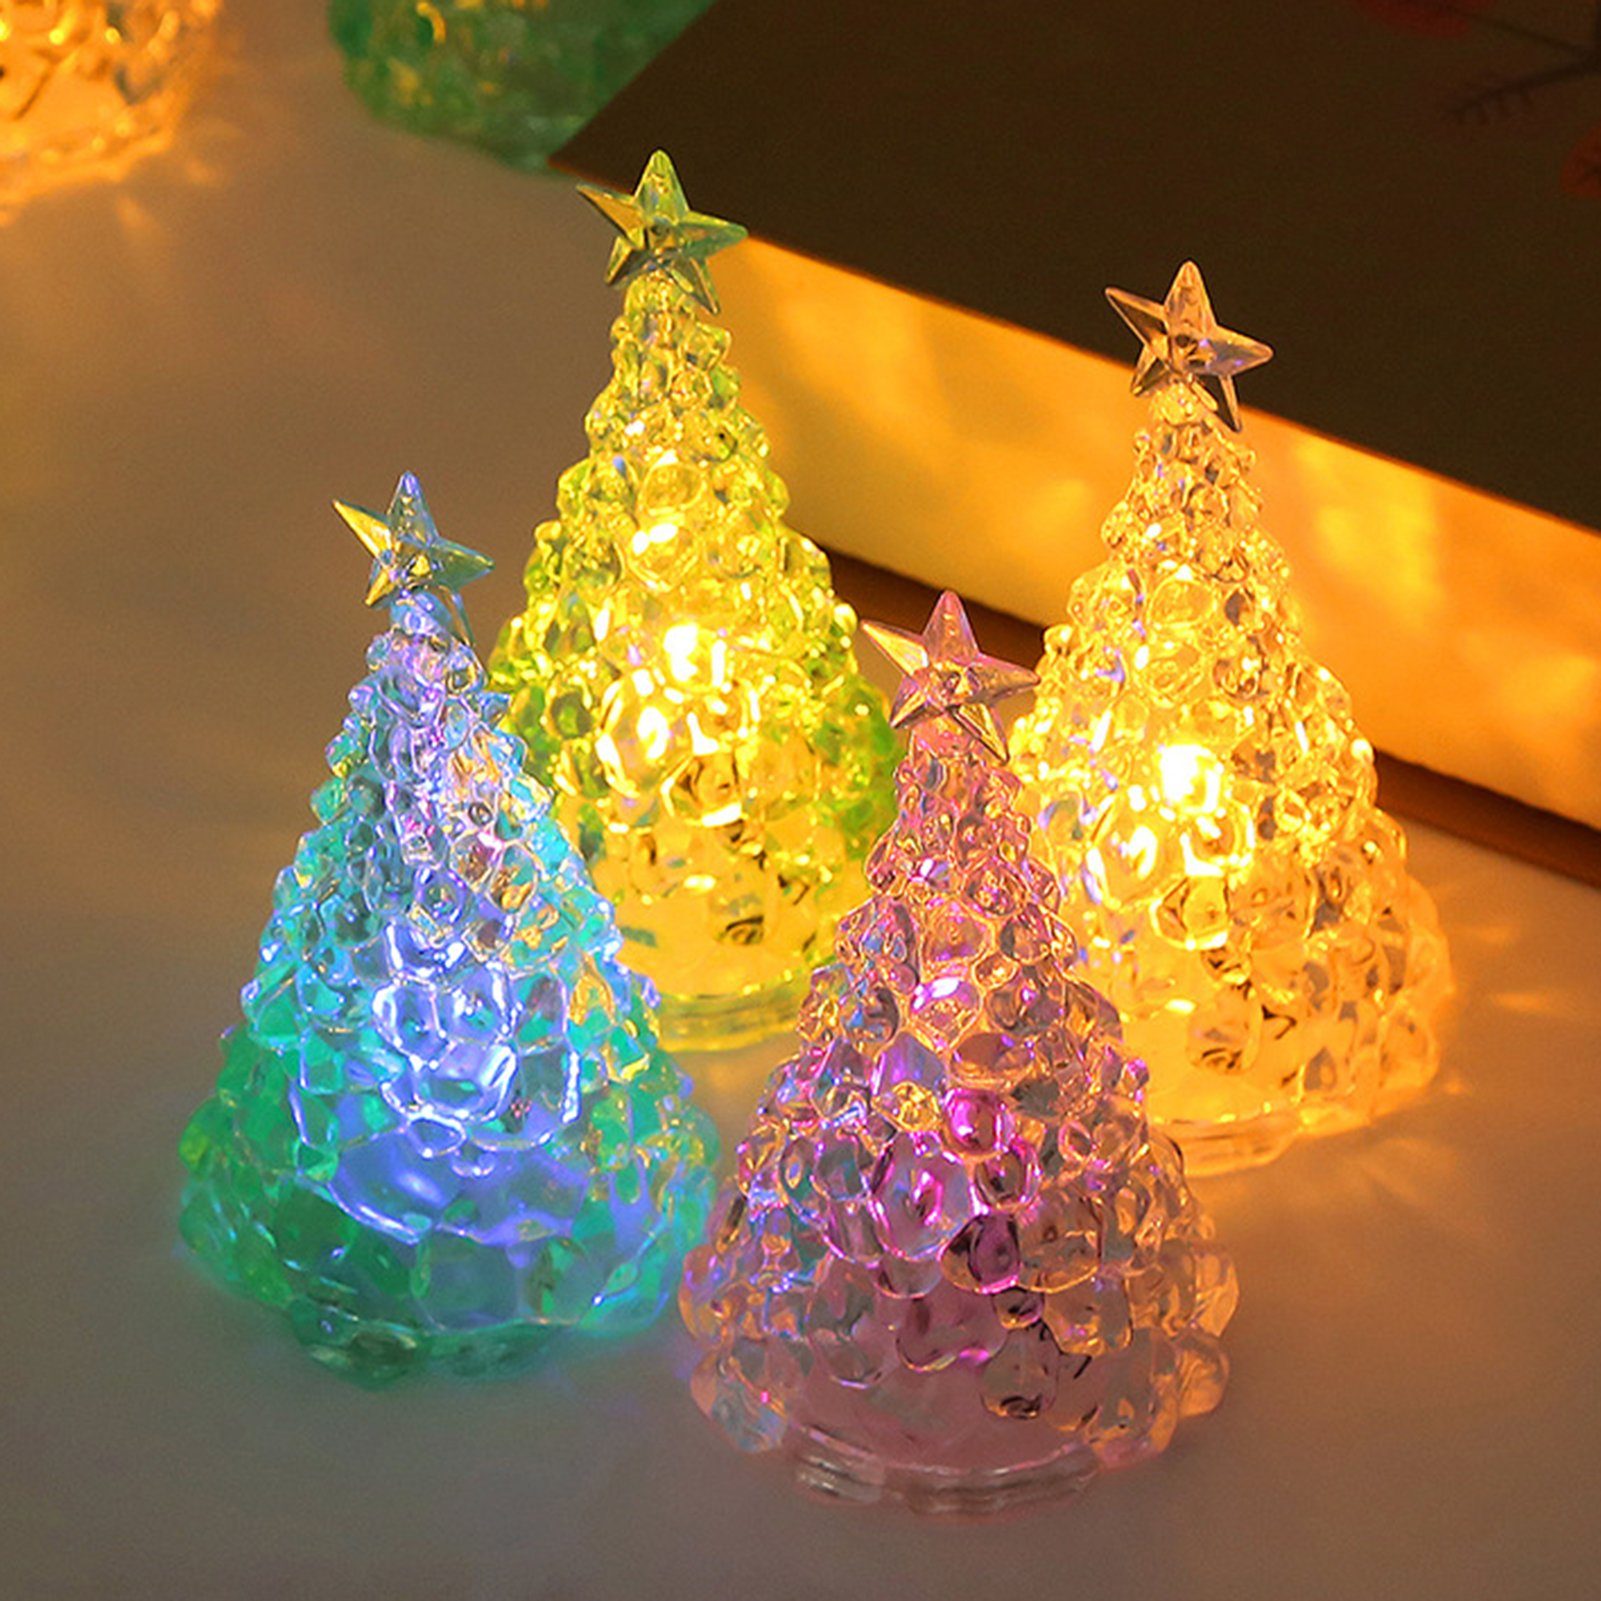 Rutaqian Nachtlicht Weihnachtsdekorationen Kristall LED Nachtlicht Weihnachtsbaum Ornament Desktop Kerzenlicht, Stück Heiligabend Geschenk LED Blau 4 Nachtlicht